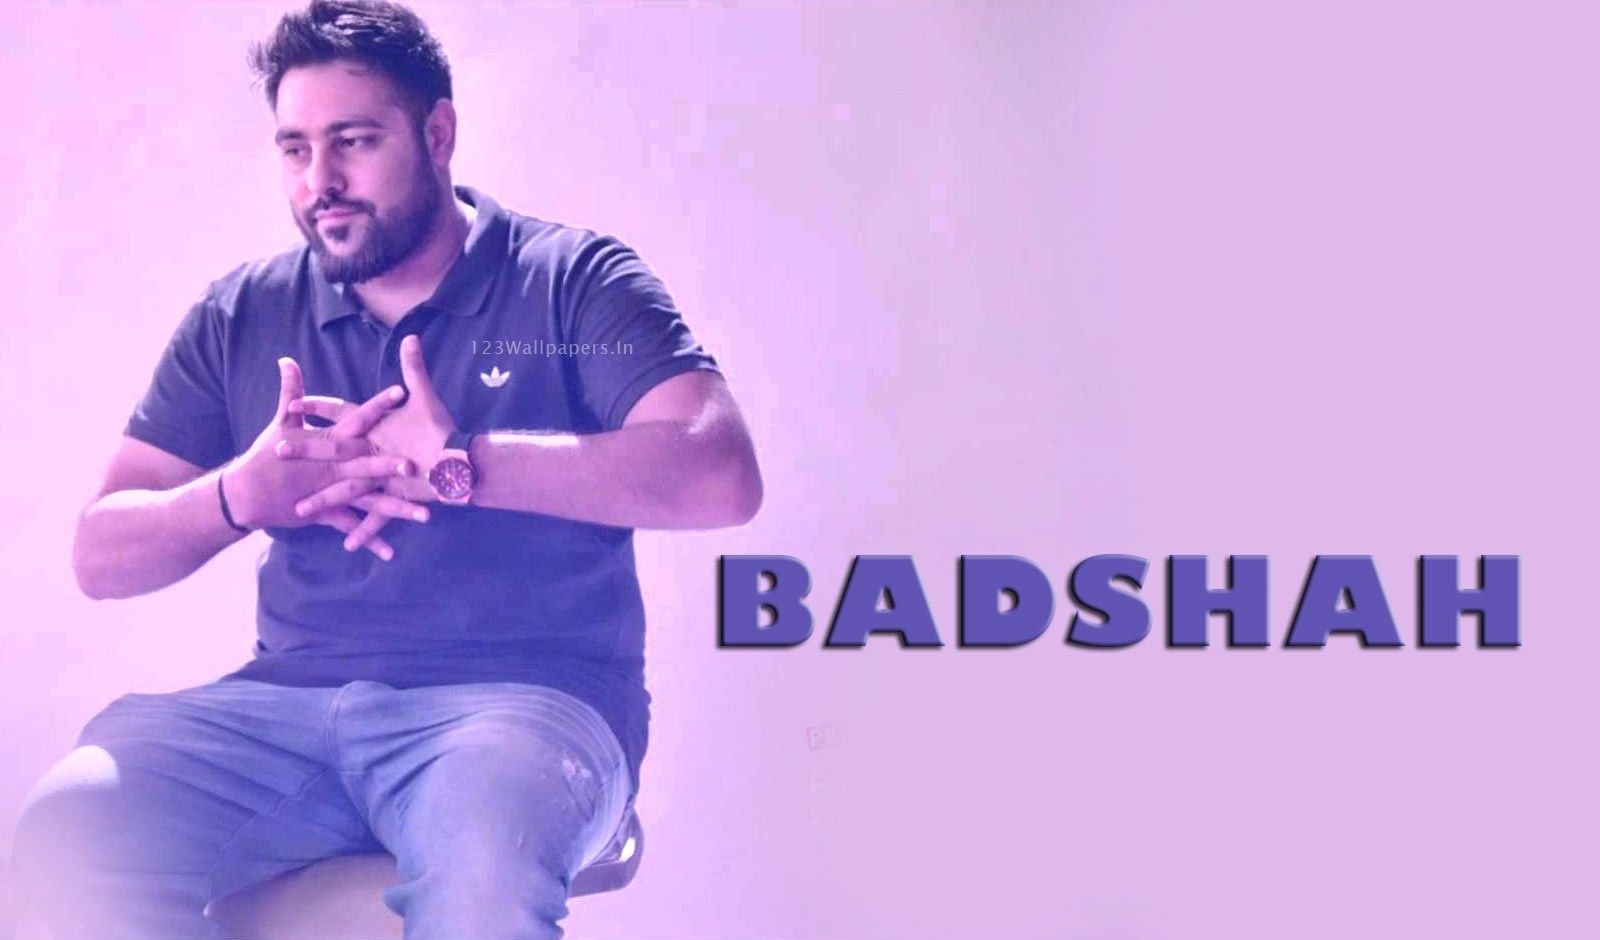 Badshah Pictures, Images - Badshah Hd , HD Wallpaper & Backgrounds